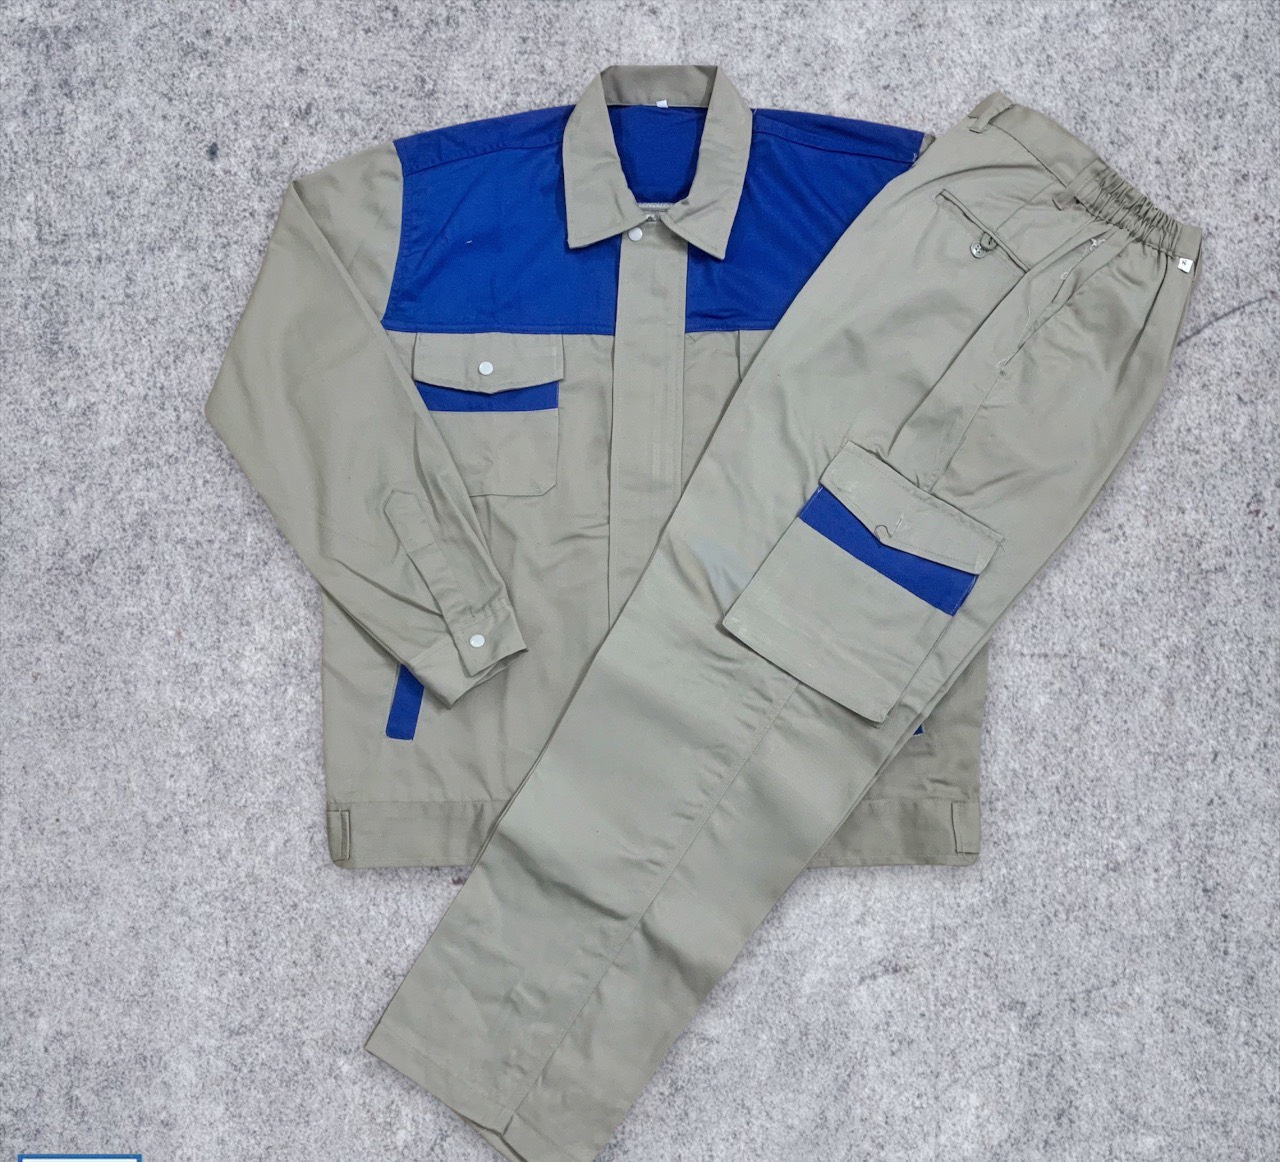 Quần áo bảo hộ M13-Khóa kaki liên doanh phối màu ghi xanh